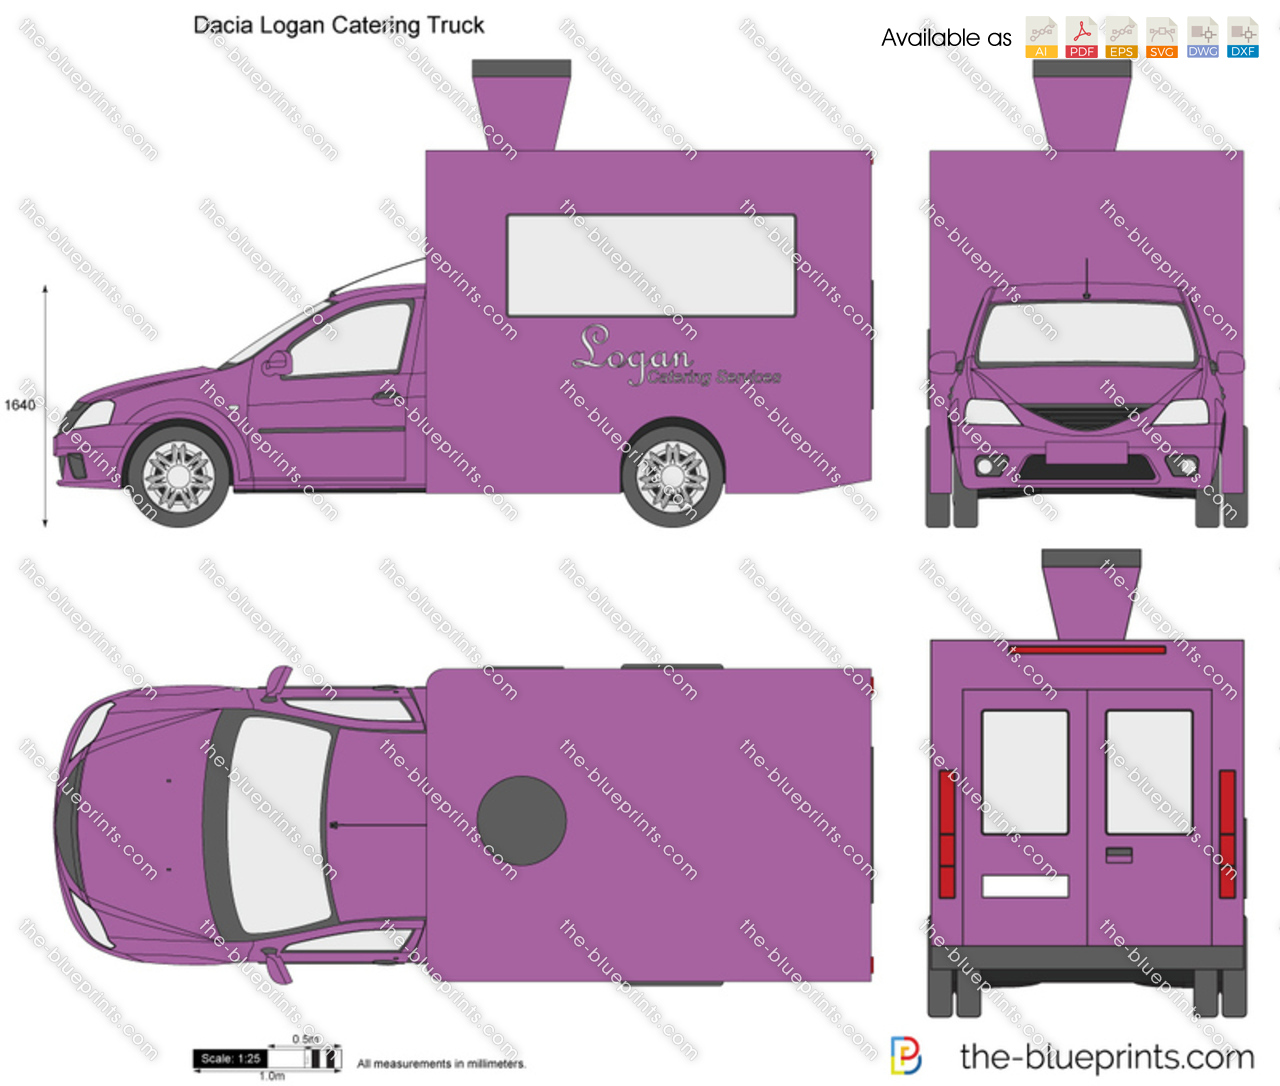 Dacia Logan Catering Truck